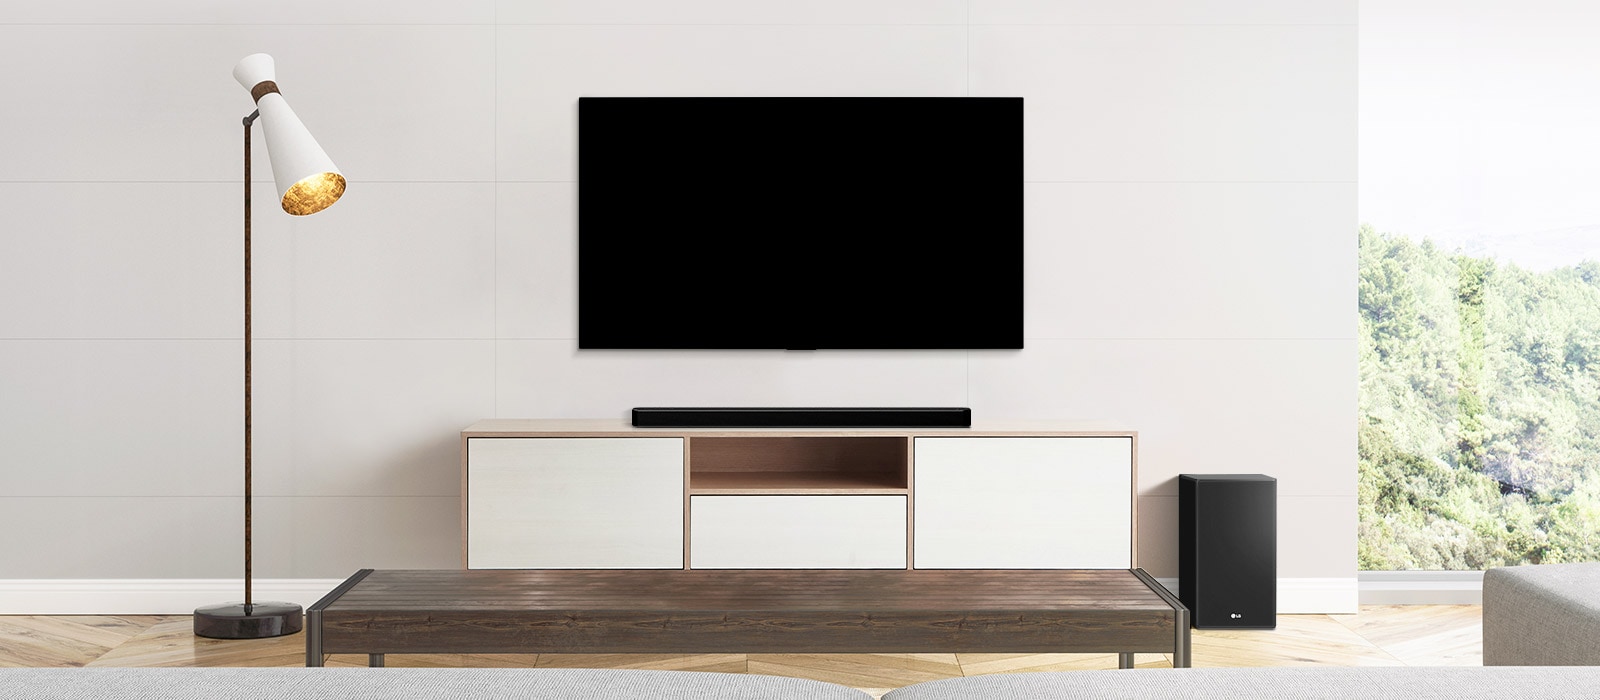 Саундбар LG и телевизор LG как идеальное целое в интерьере вашего дома